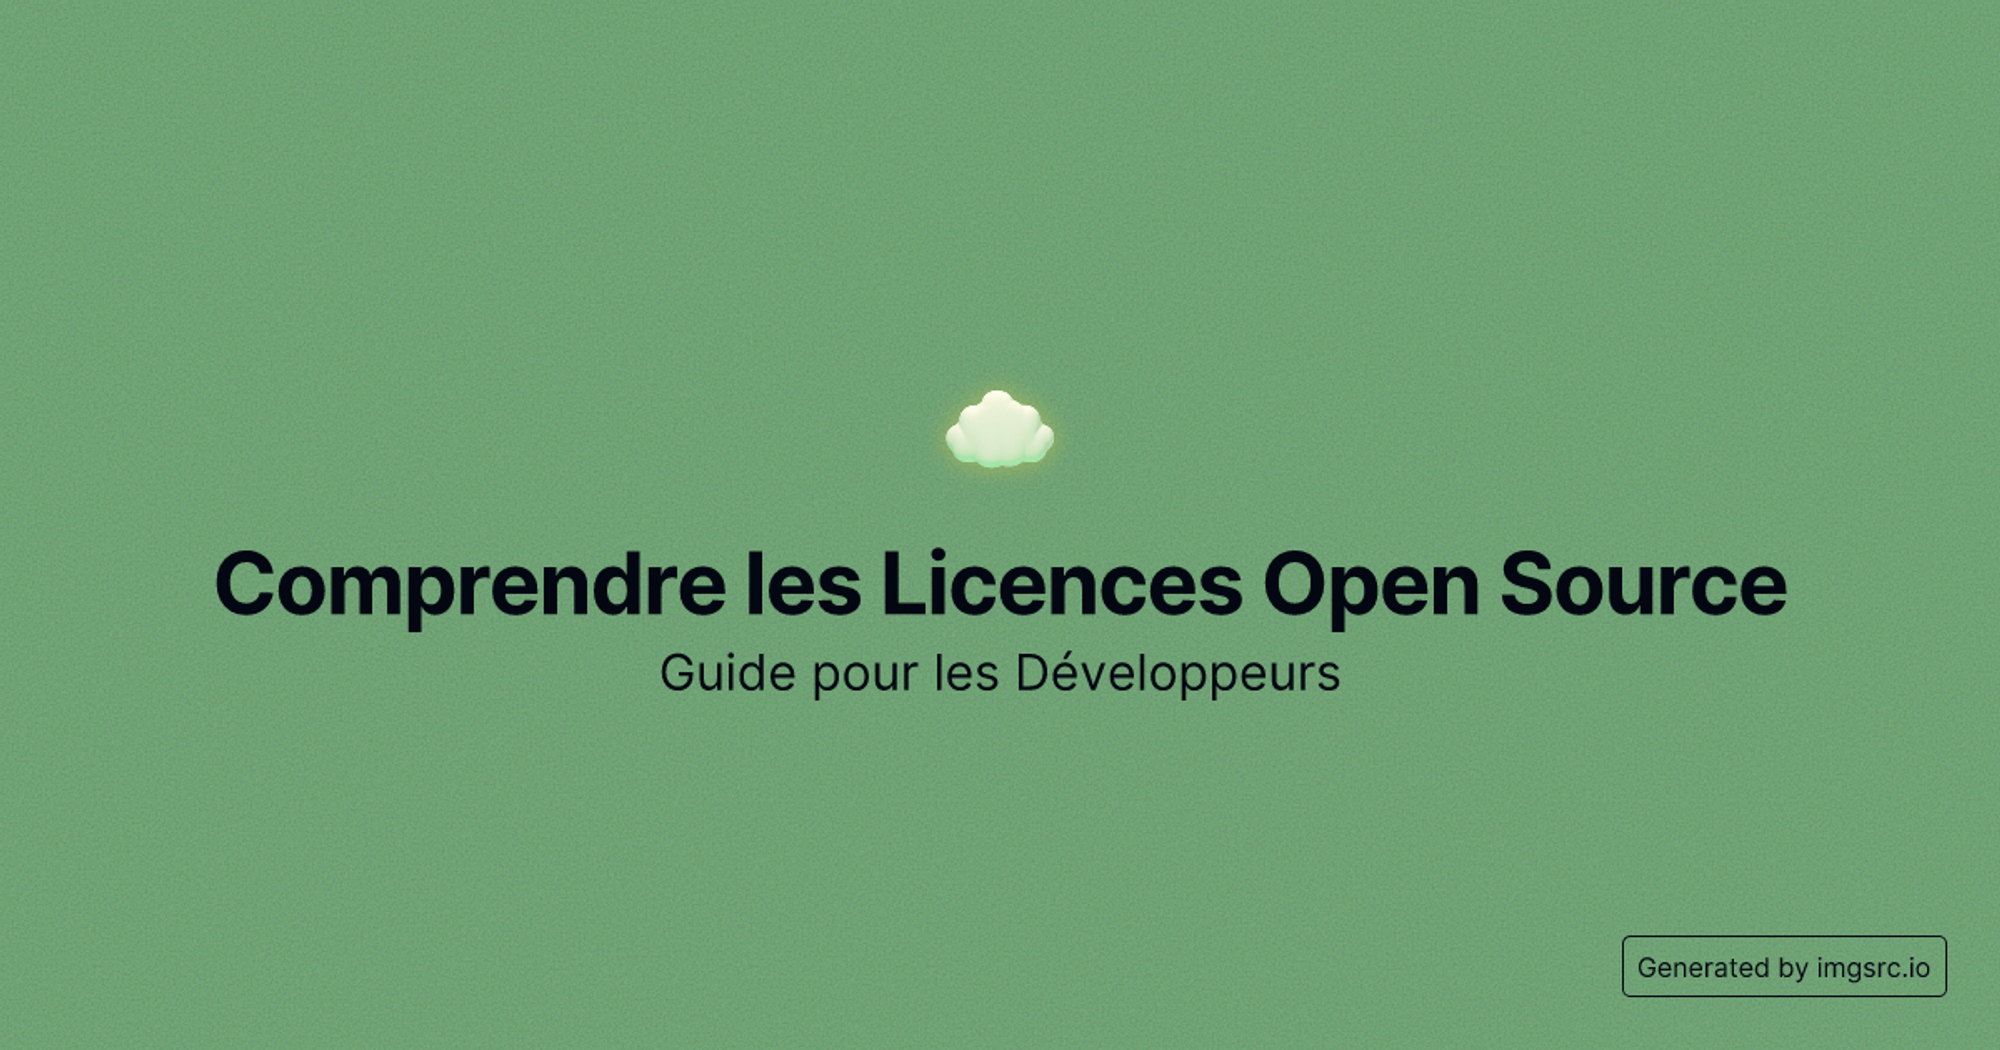 Comprendre les Licences Open Source: Guide pour les Développeurs